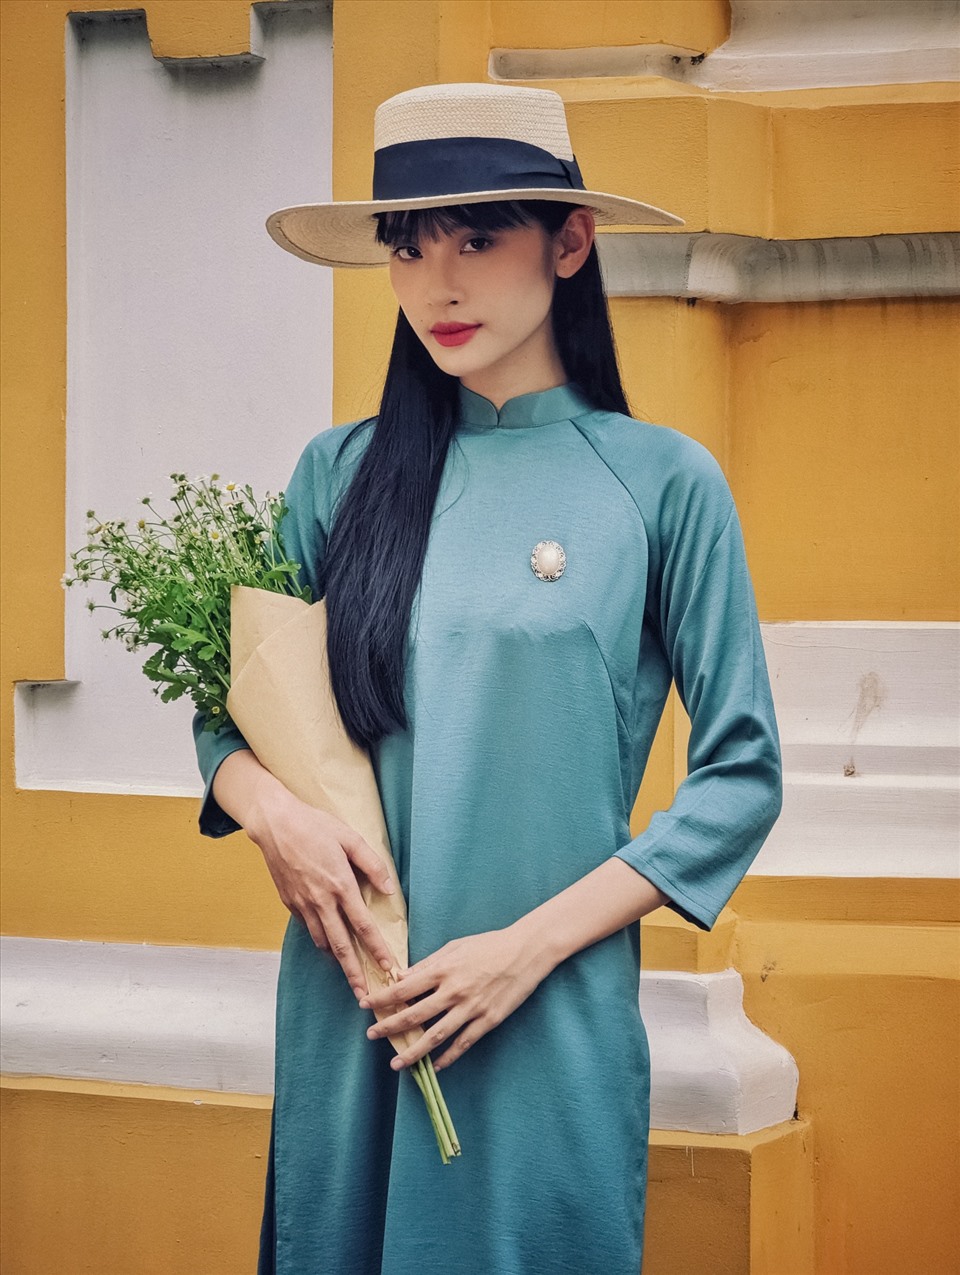 Danh ca Thanh Thuý là vai diễn đầu tay của cô gái trẻ sinh năm 2001 Trần Nhật Linh, người con gái Huế đã khiến khán giả phải thốt lên “quá giống” khi ekip hé lộ tạo hình thập niên 60 của cô.